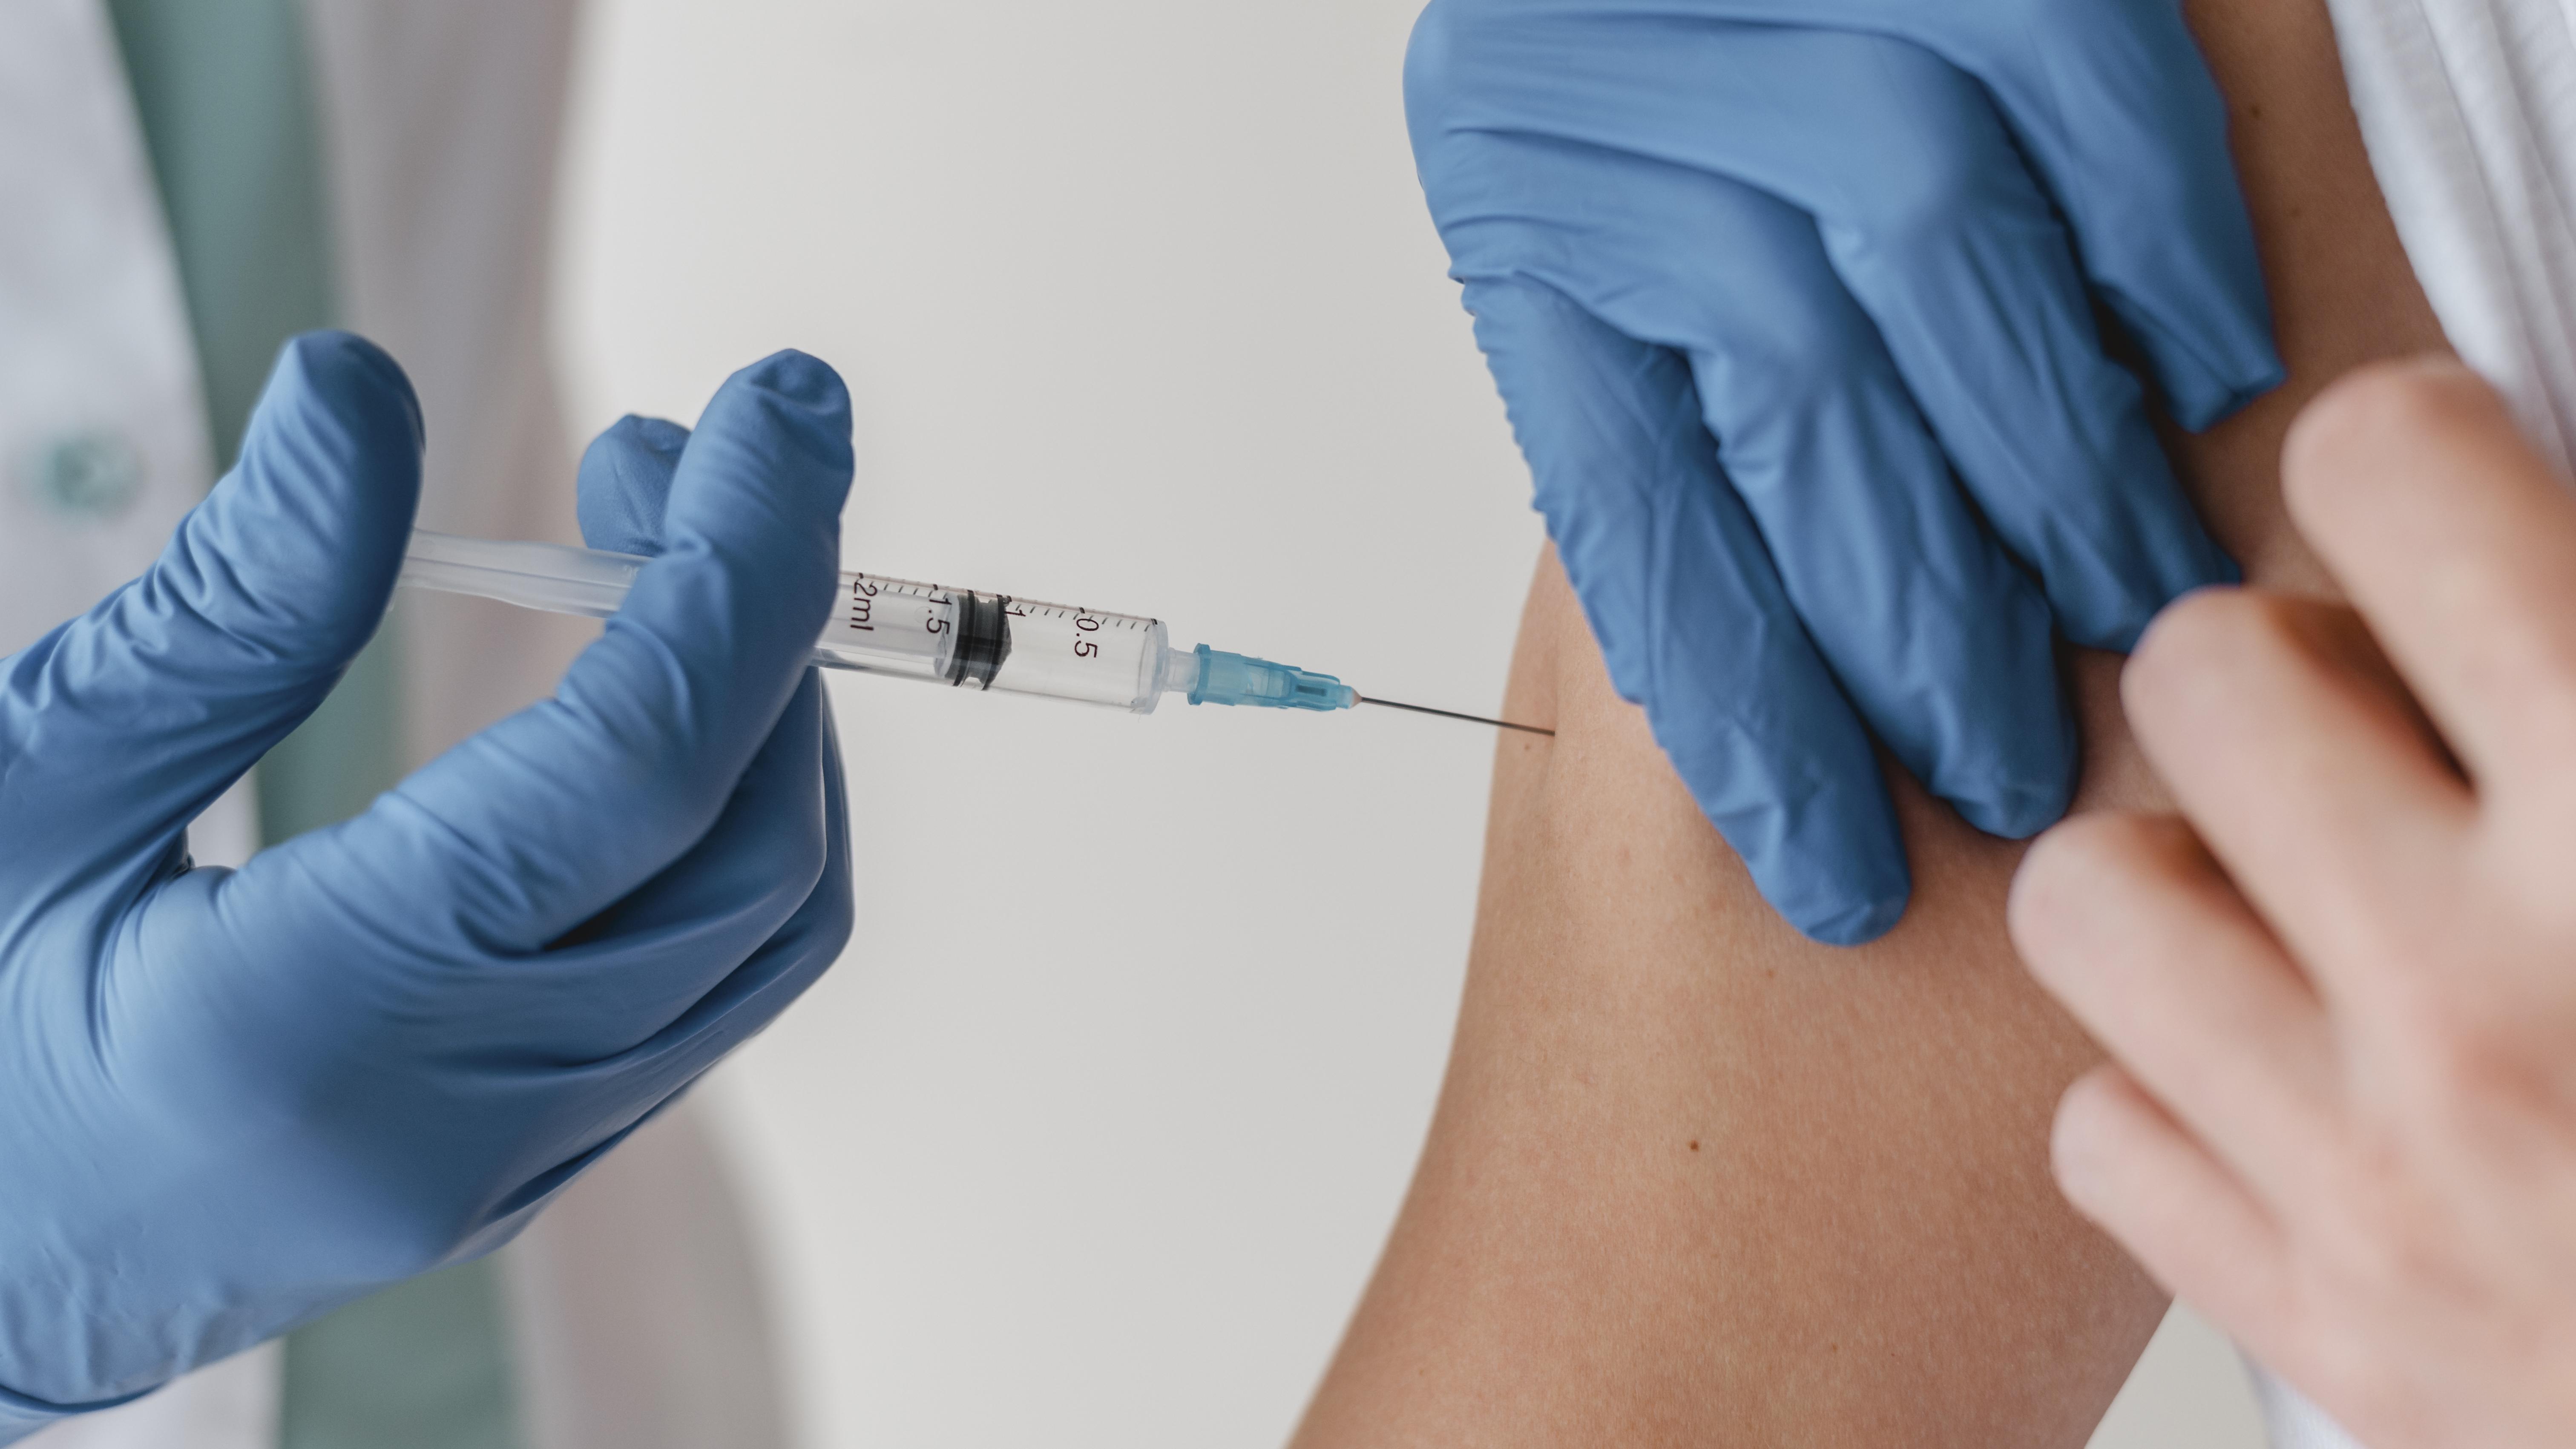 Vacunación COVID-19